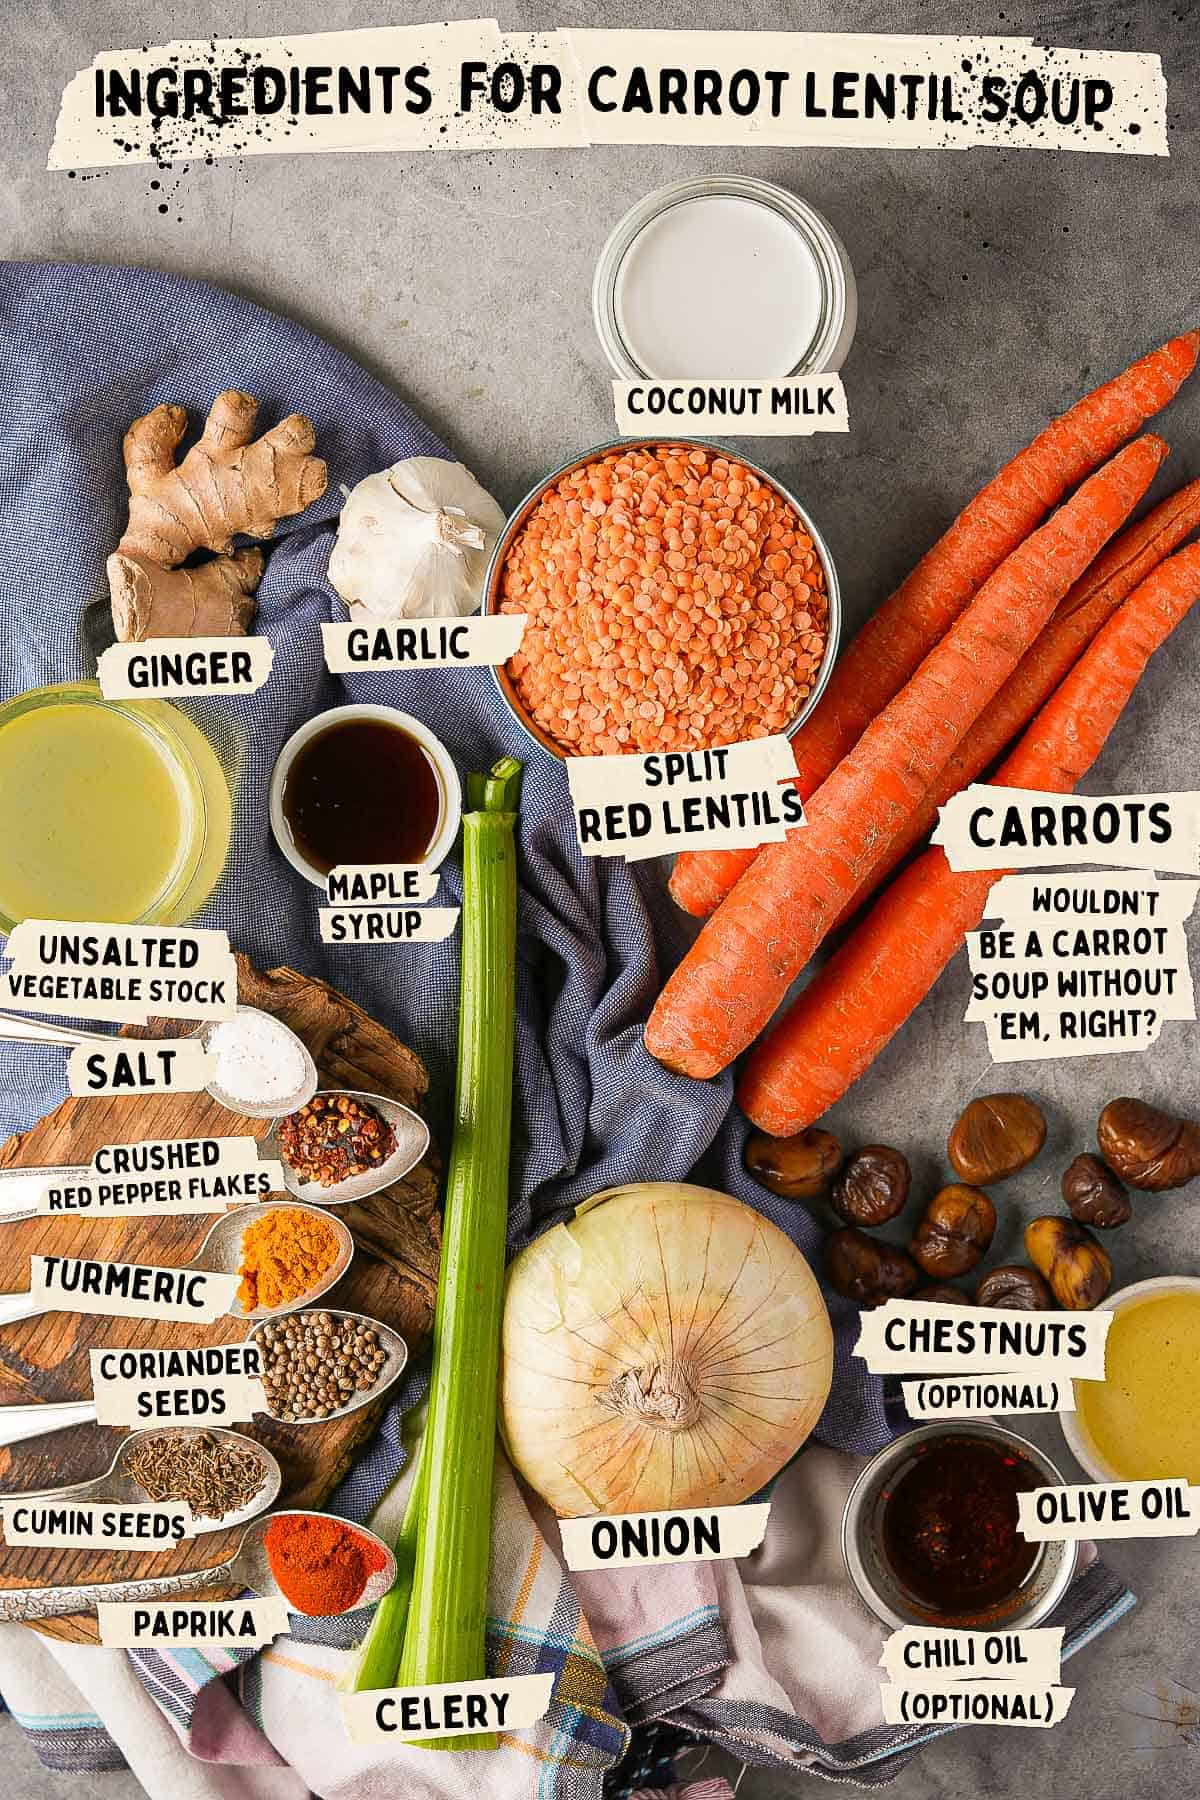 Ingredients for carrot lentil soup.